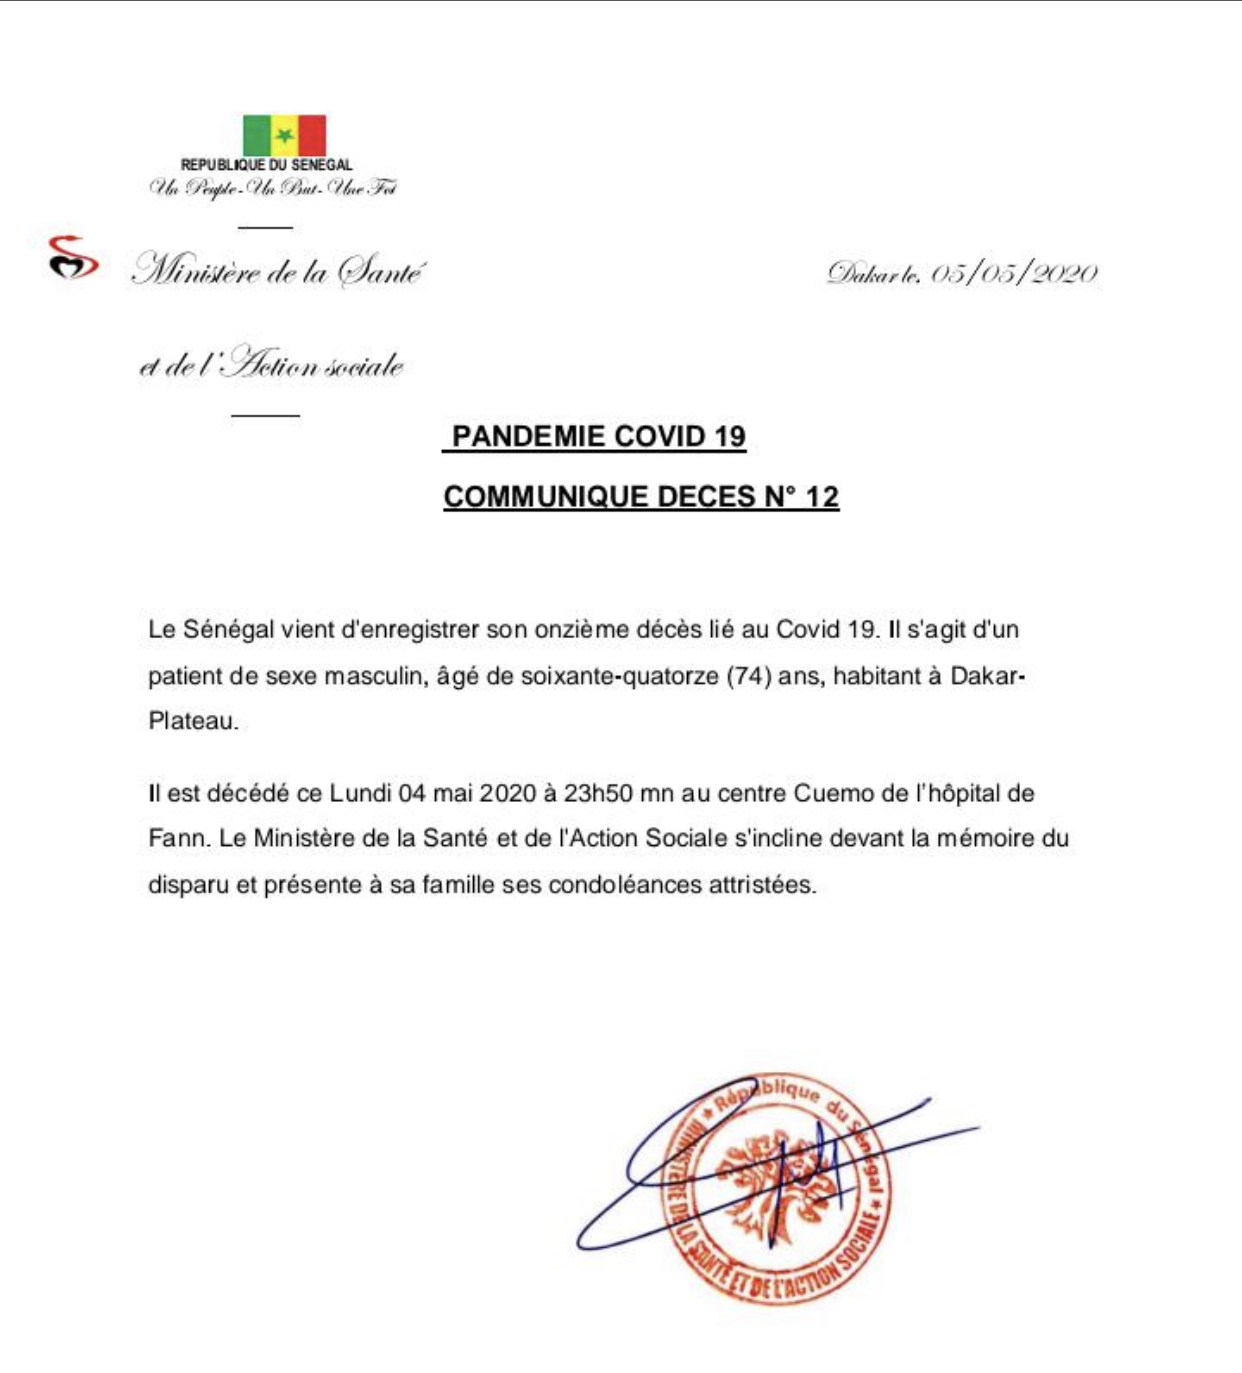 URGENT : Le Sénégal enregistre un onzième décès lié au Covid-19.